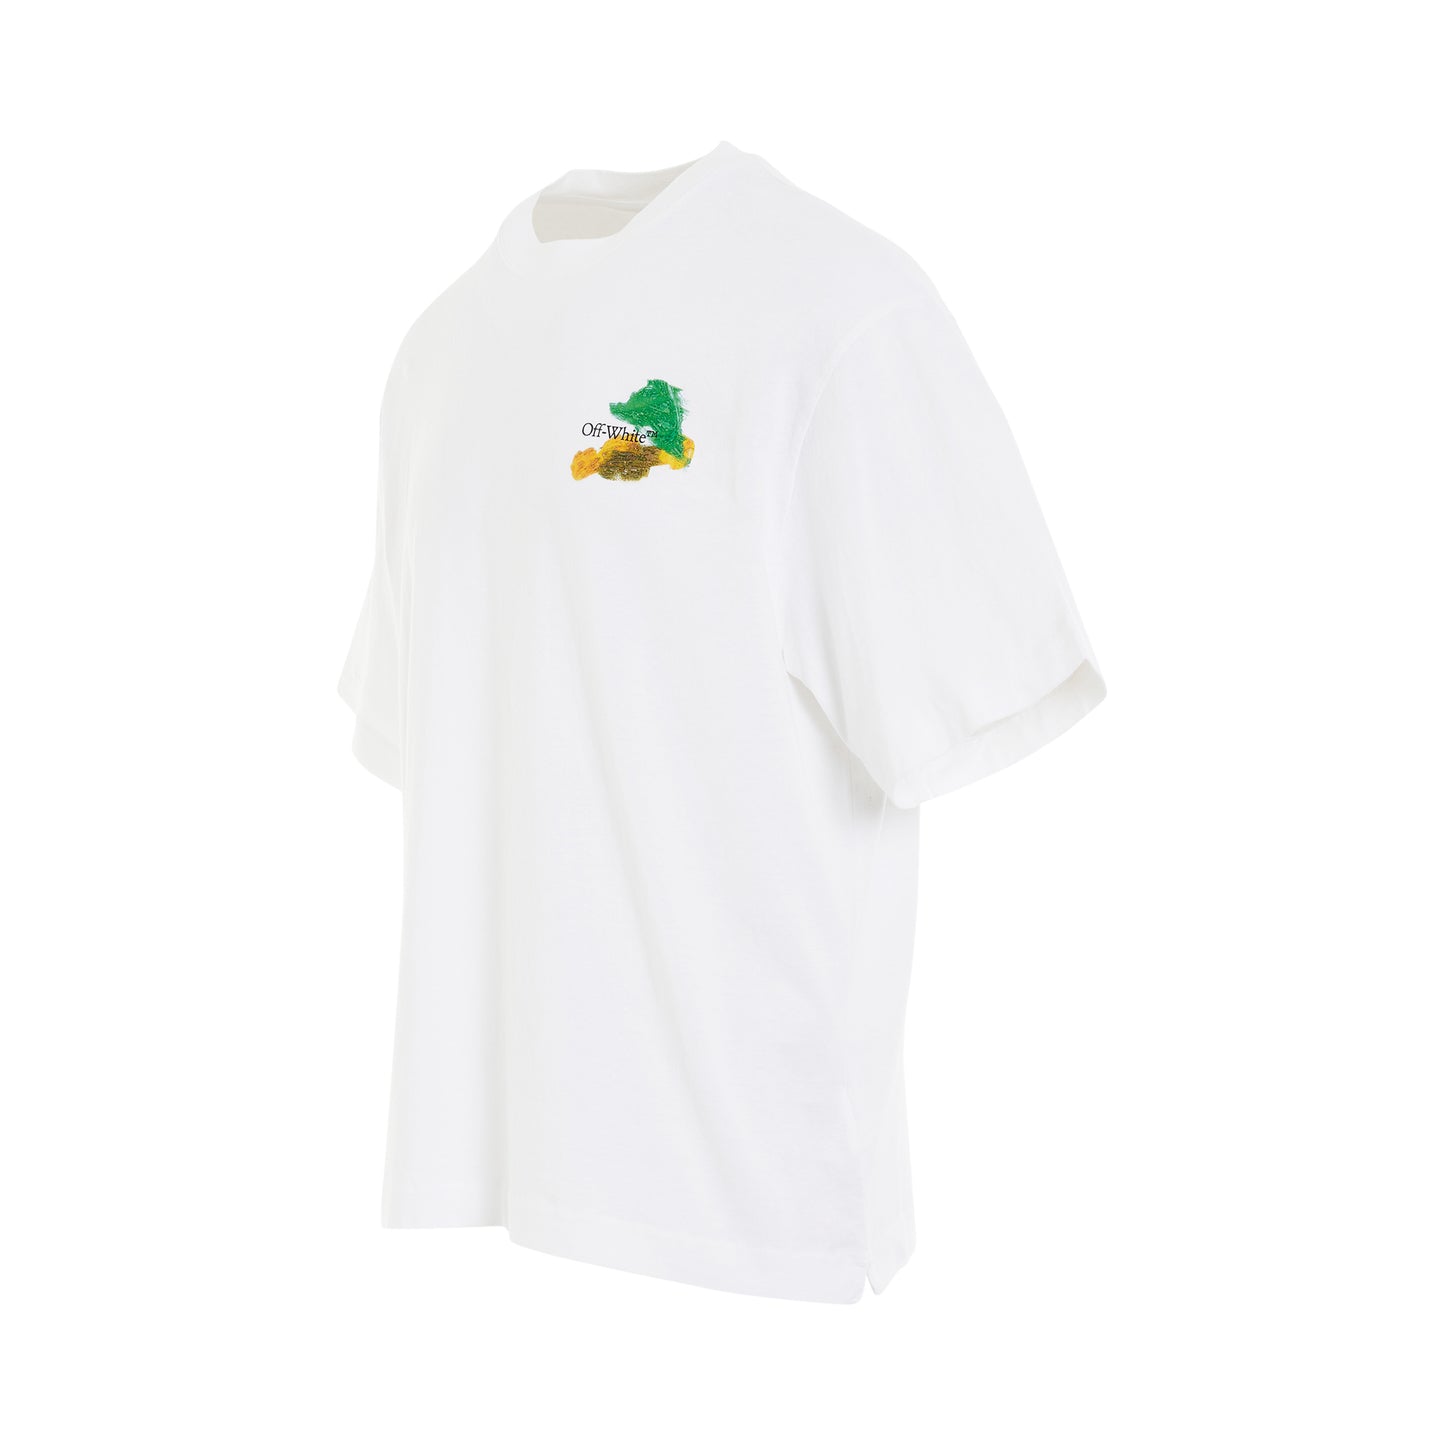 Brush Arrow Oversized Skate T-Shirt in White/Multicolour